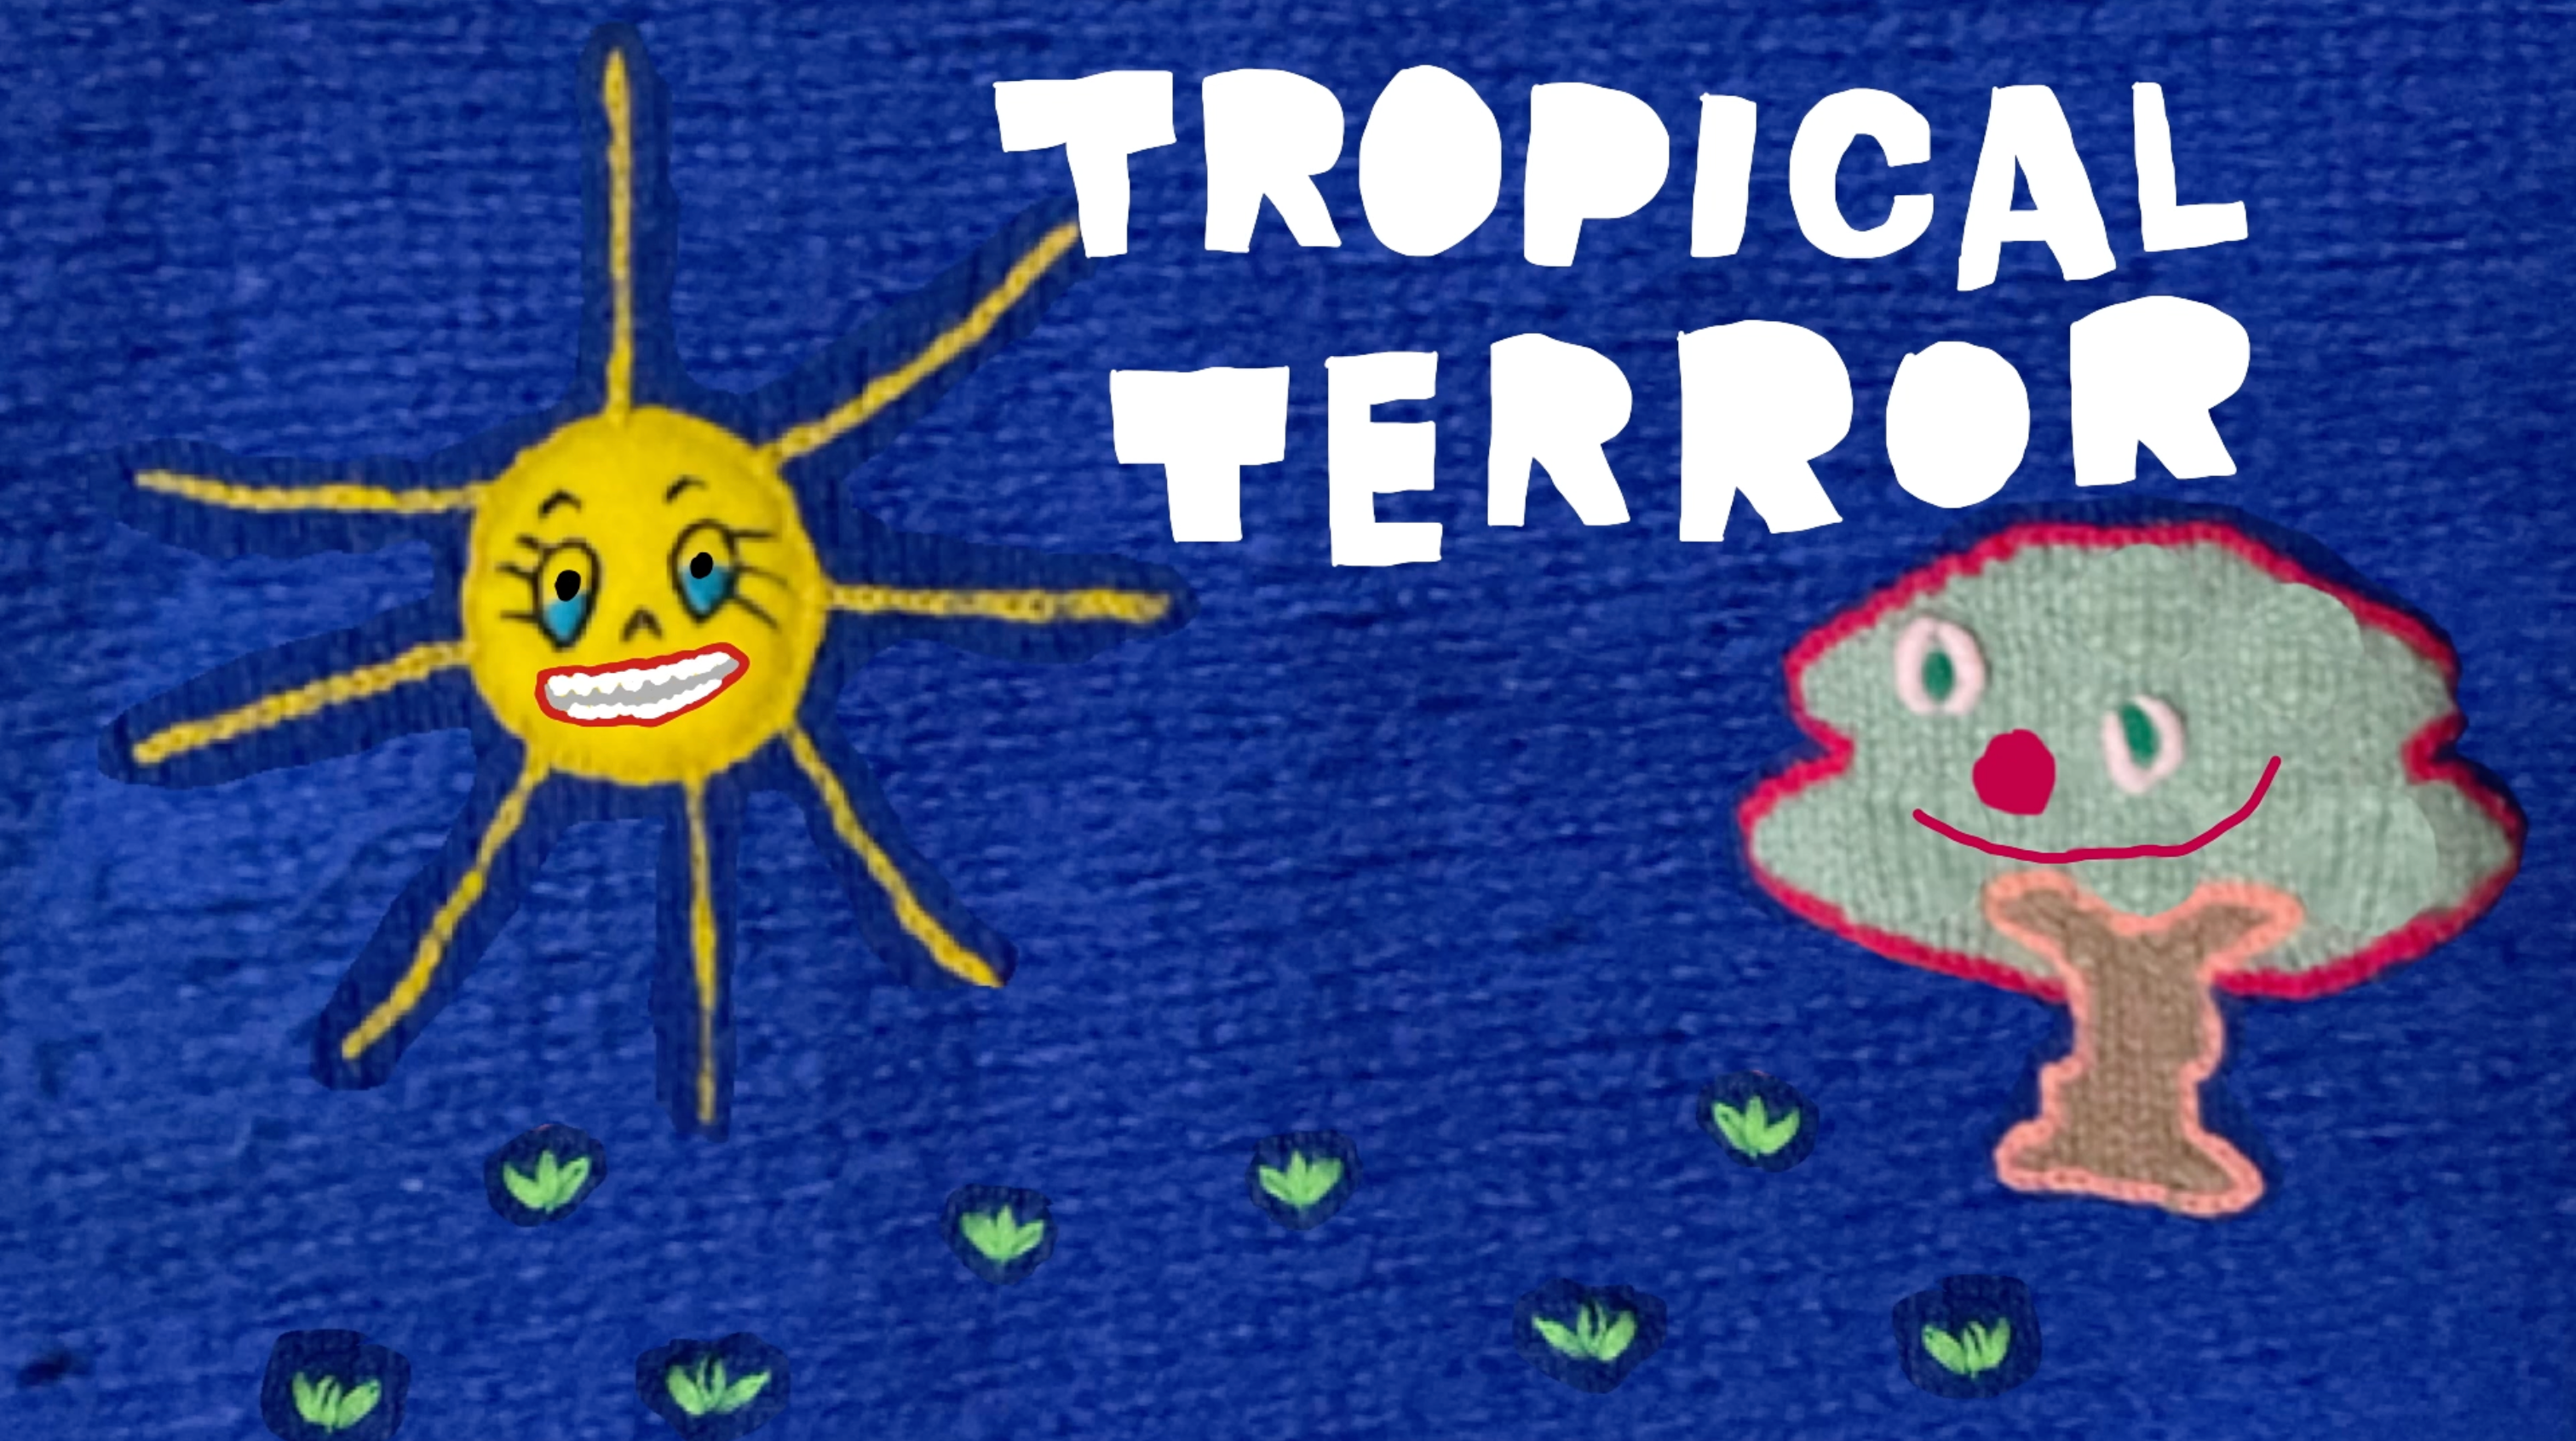 TROPICAL TERROR - Página frontal